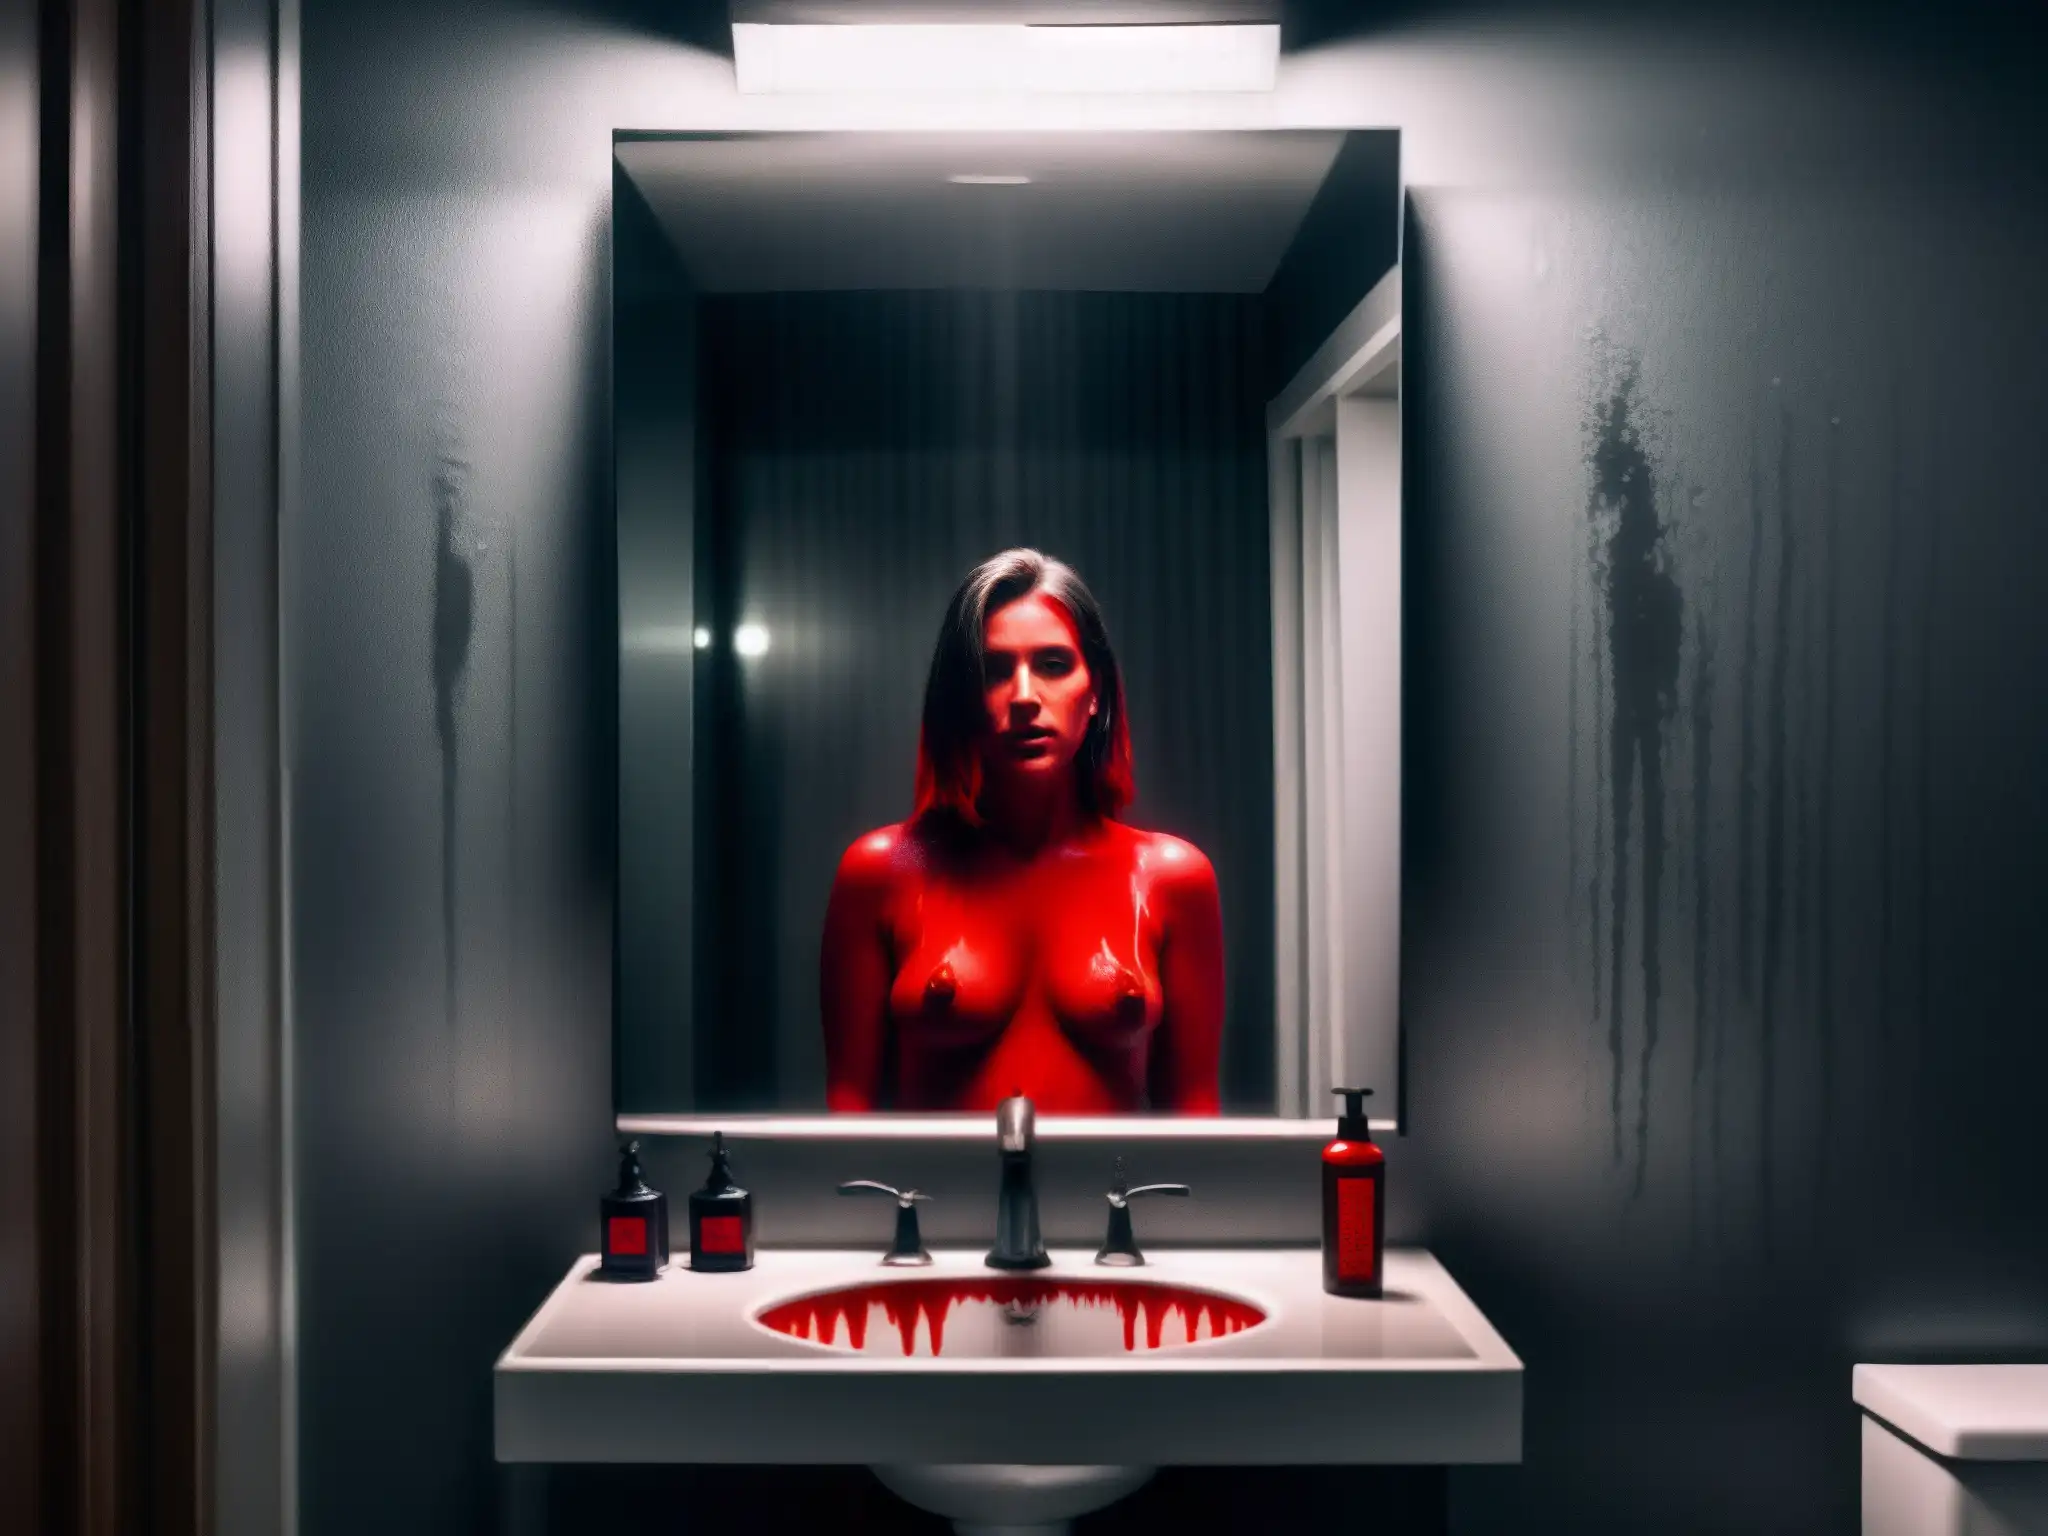 Un baño tenebroso con espejo empañado reflejando una figura borrosa